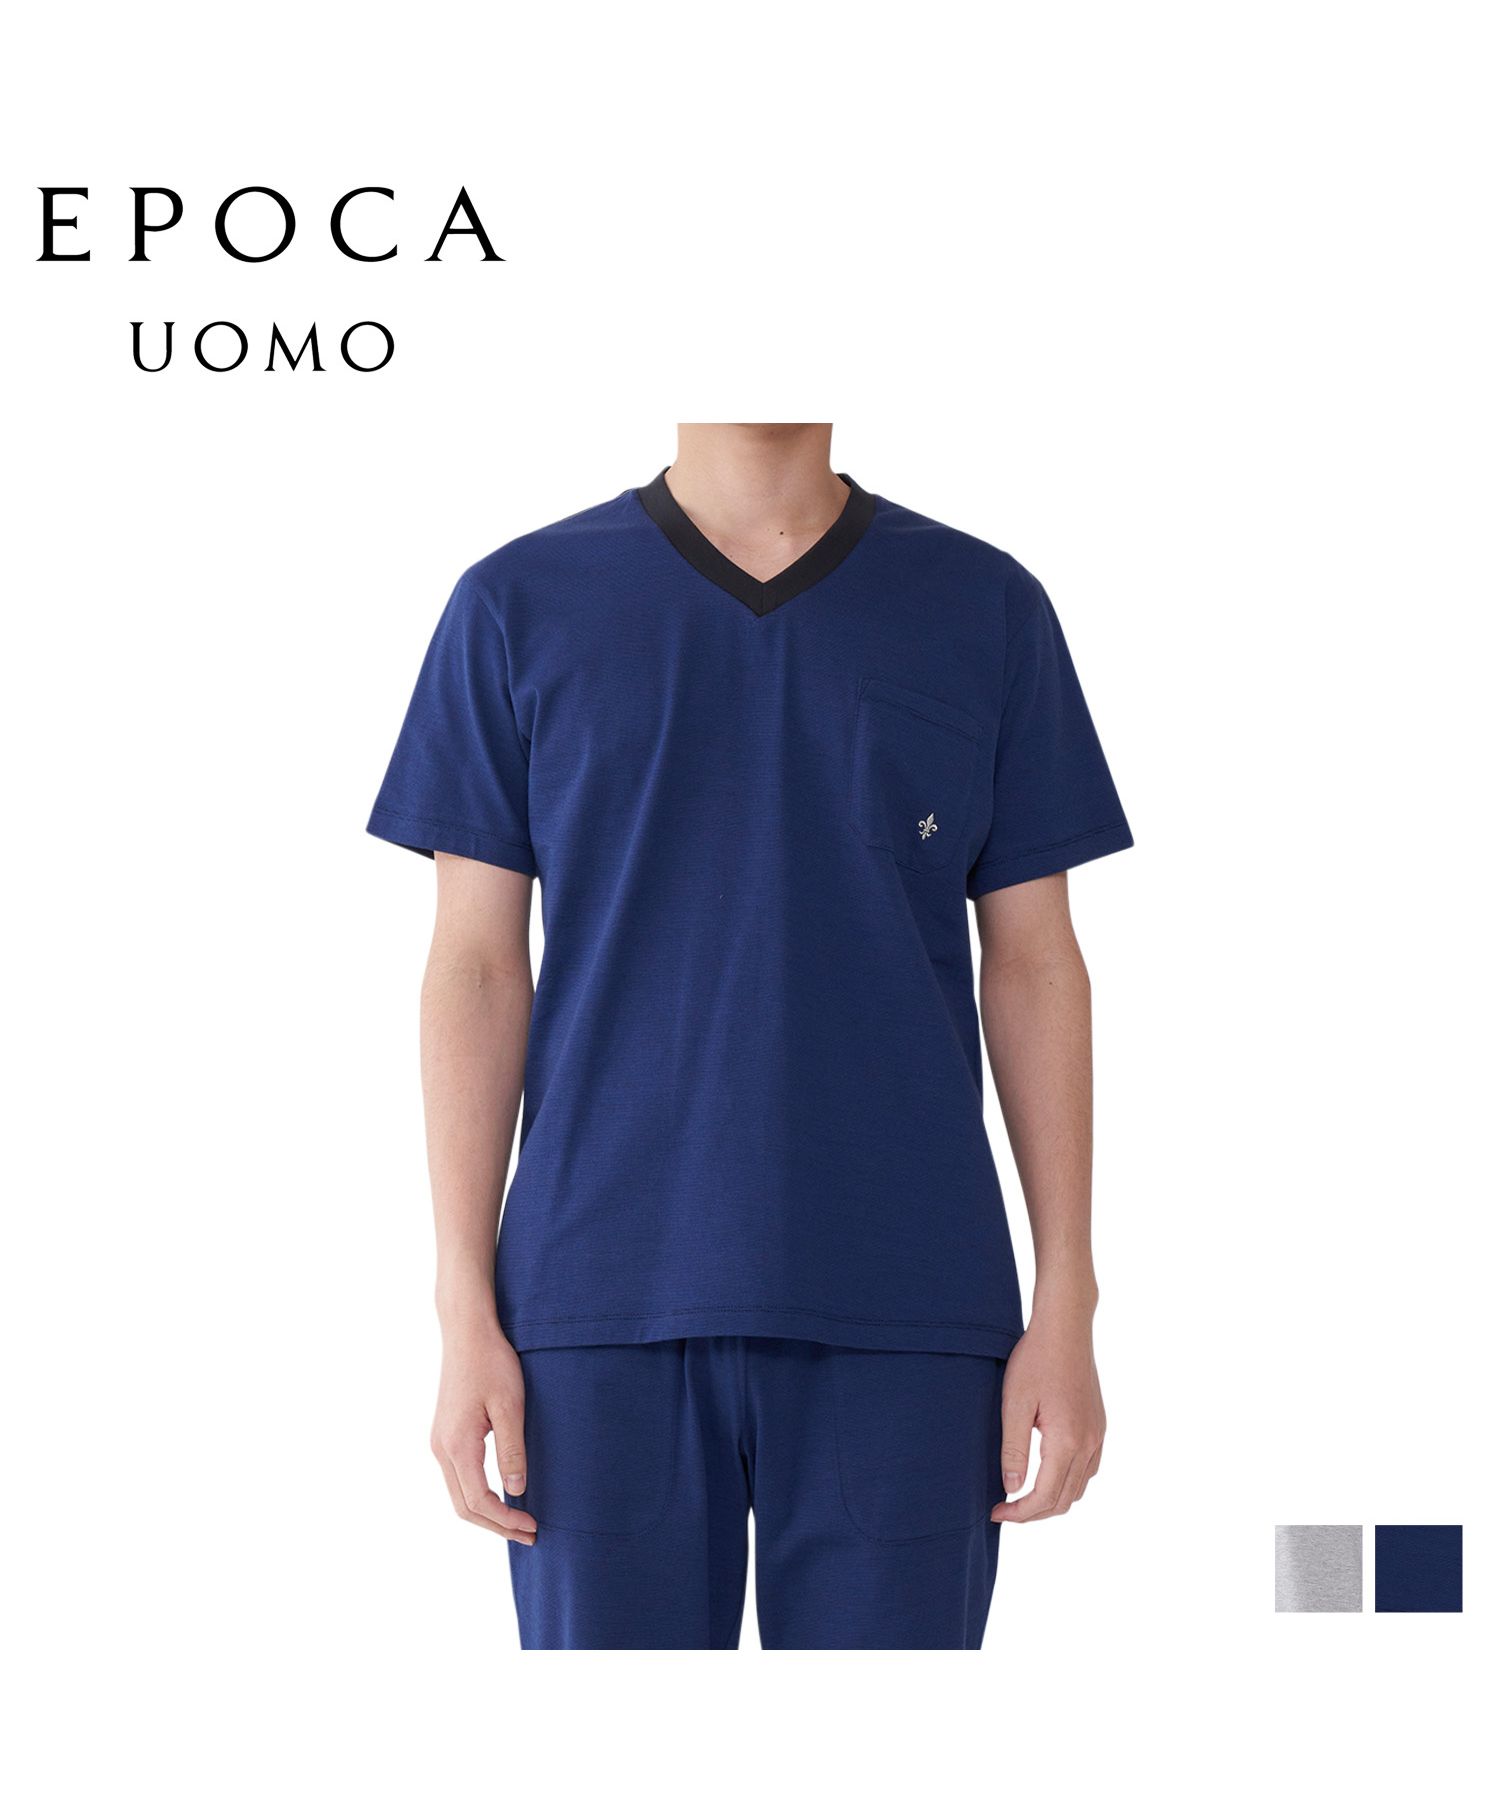 エポカ ウォモ EPOCA UOMO Tシャツ 半袖 インナーシャツ ホームウェア